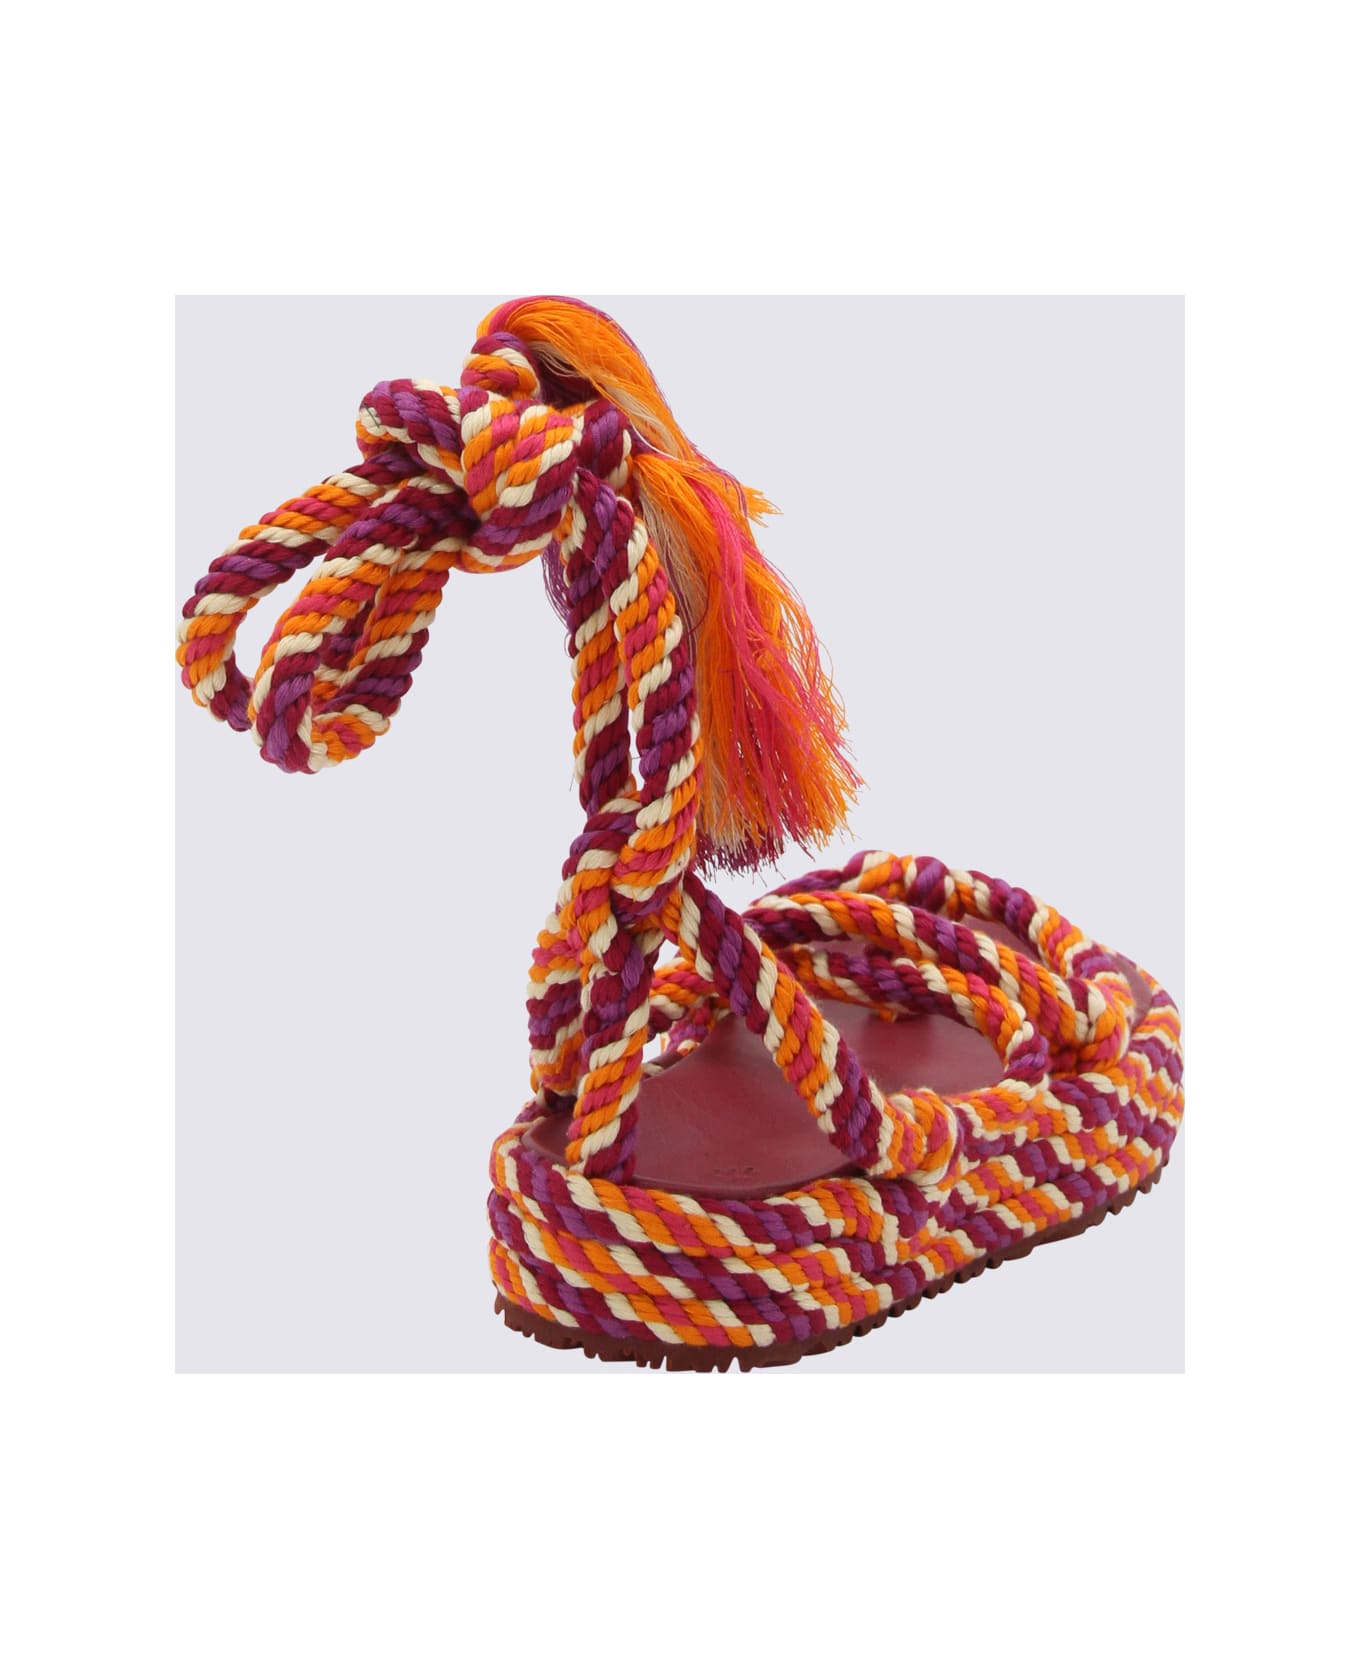 Isabel Marant Orange Rope Erol Sandals - Orange サンダル